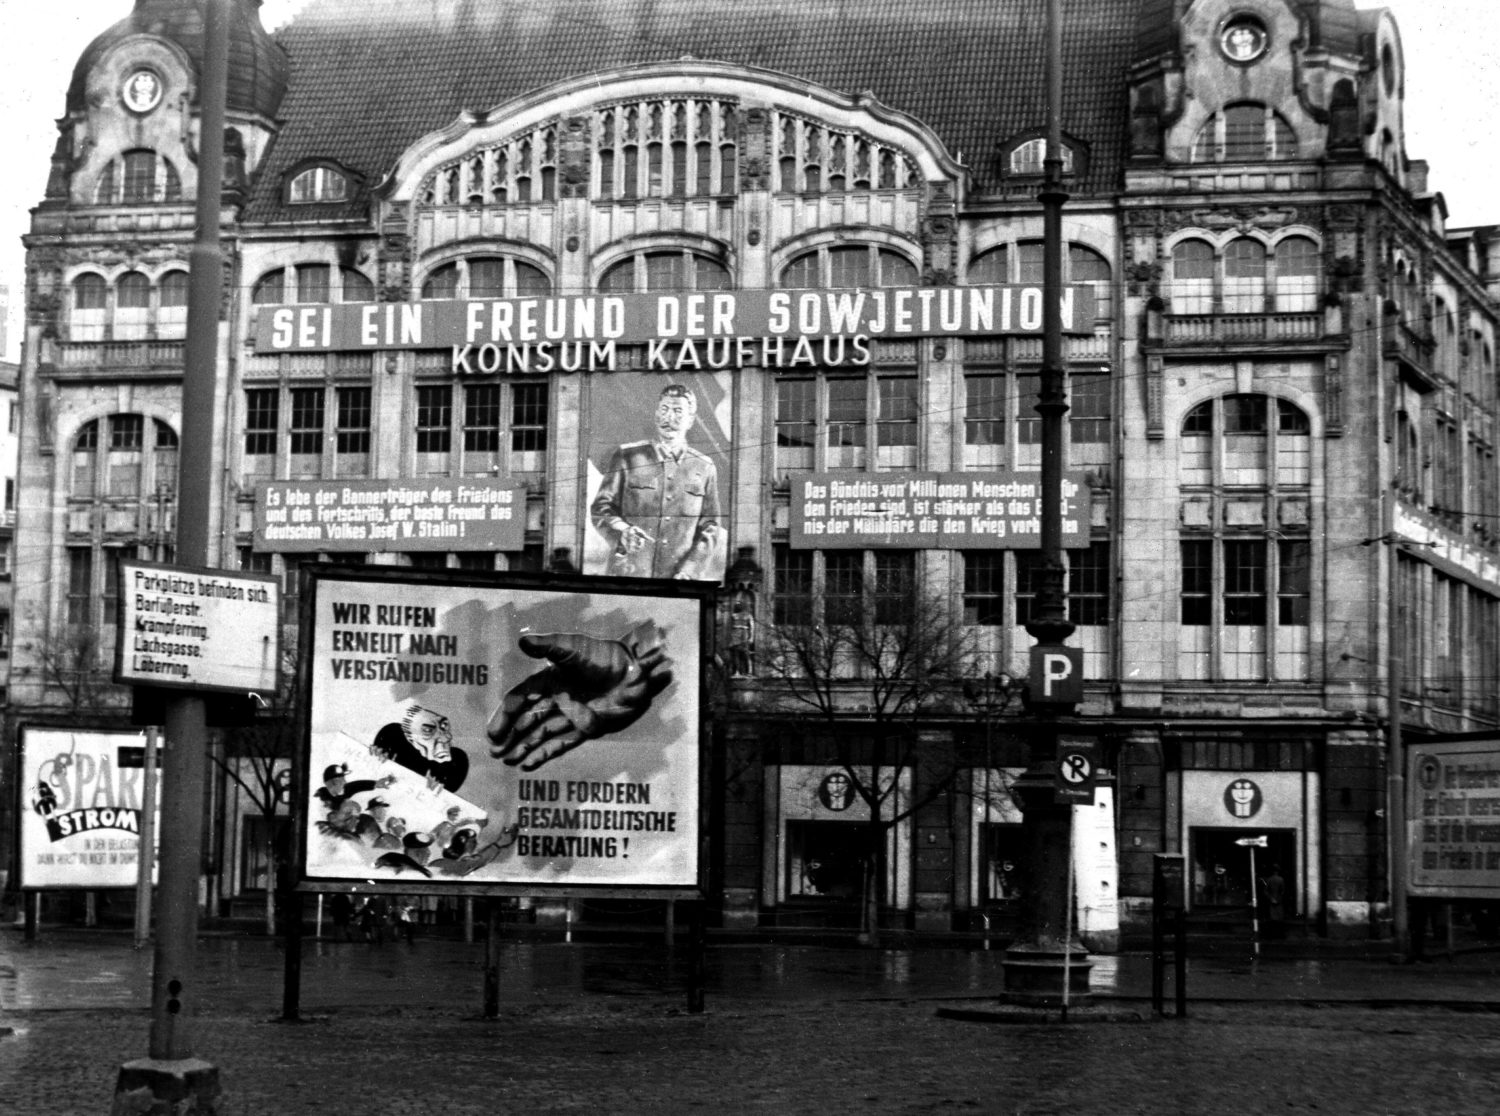 Ein Konsum Kaufhaus mit sozialistischer Propaganda in Ost-Berlin, um 1953. Foto: Imago Images/Photo12